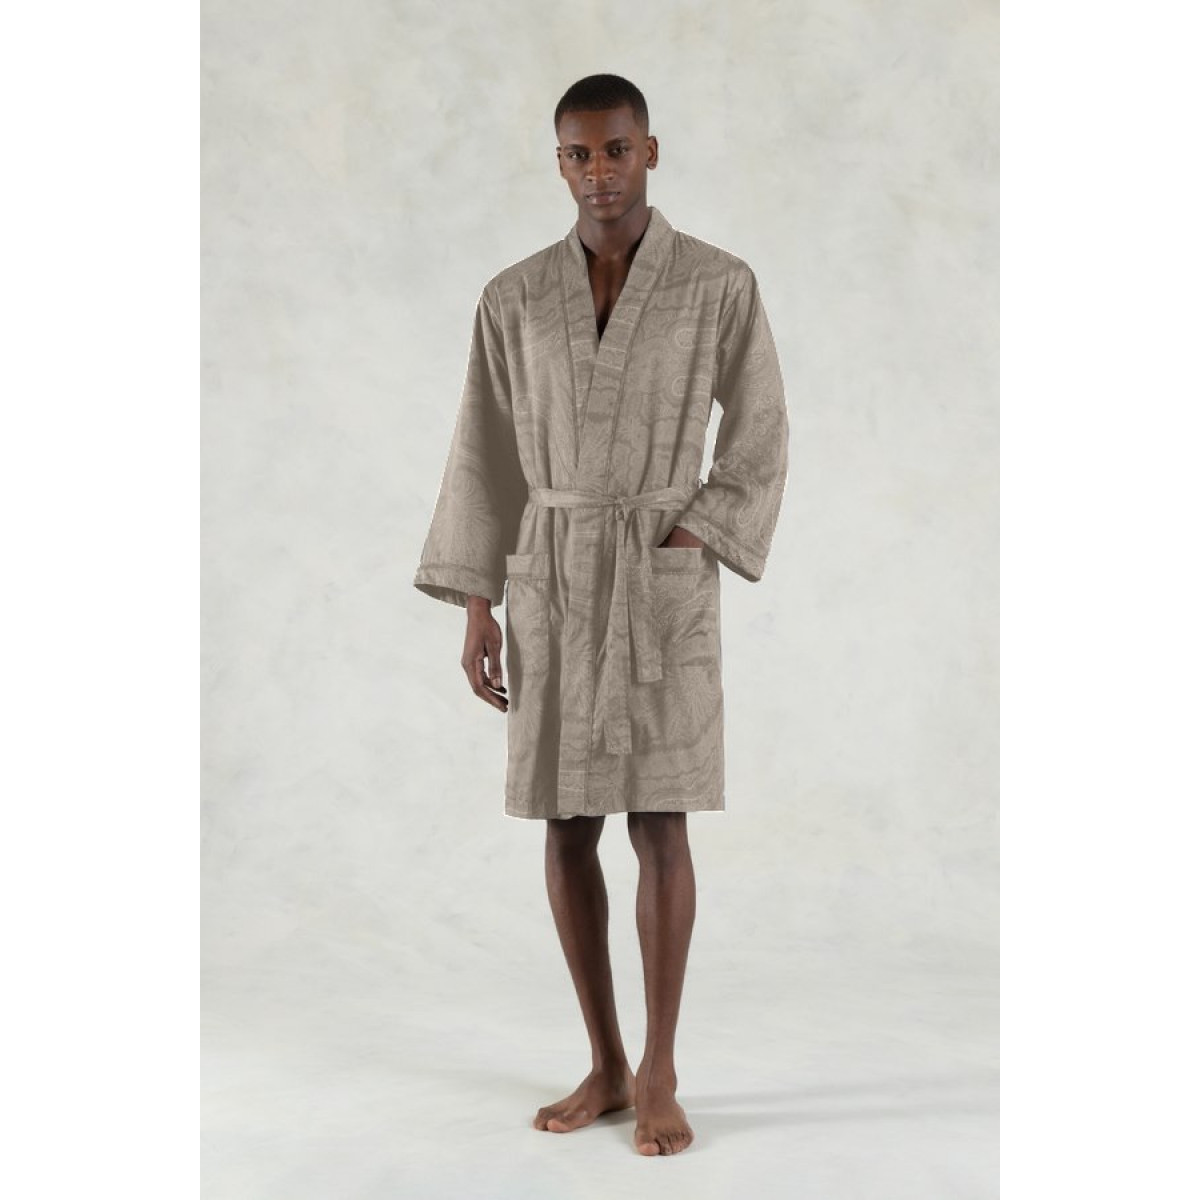 халат кимоно Ralph Lauren Doncaster - купить в магазине Yves Delorme Russia